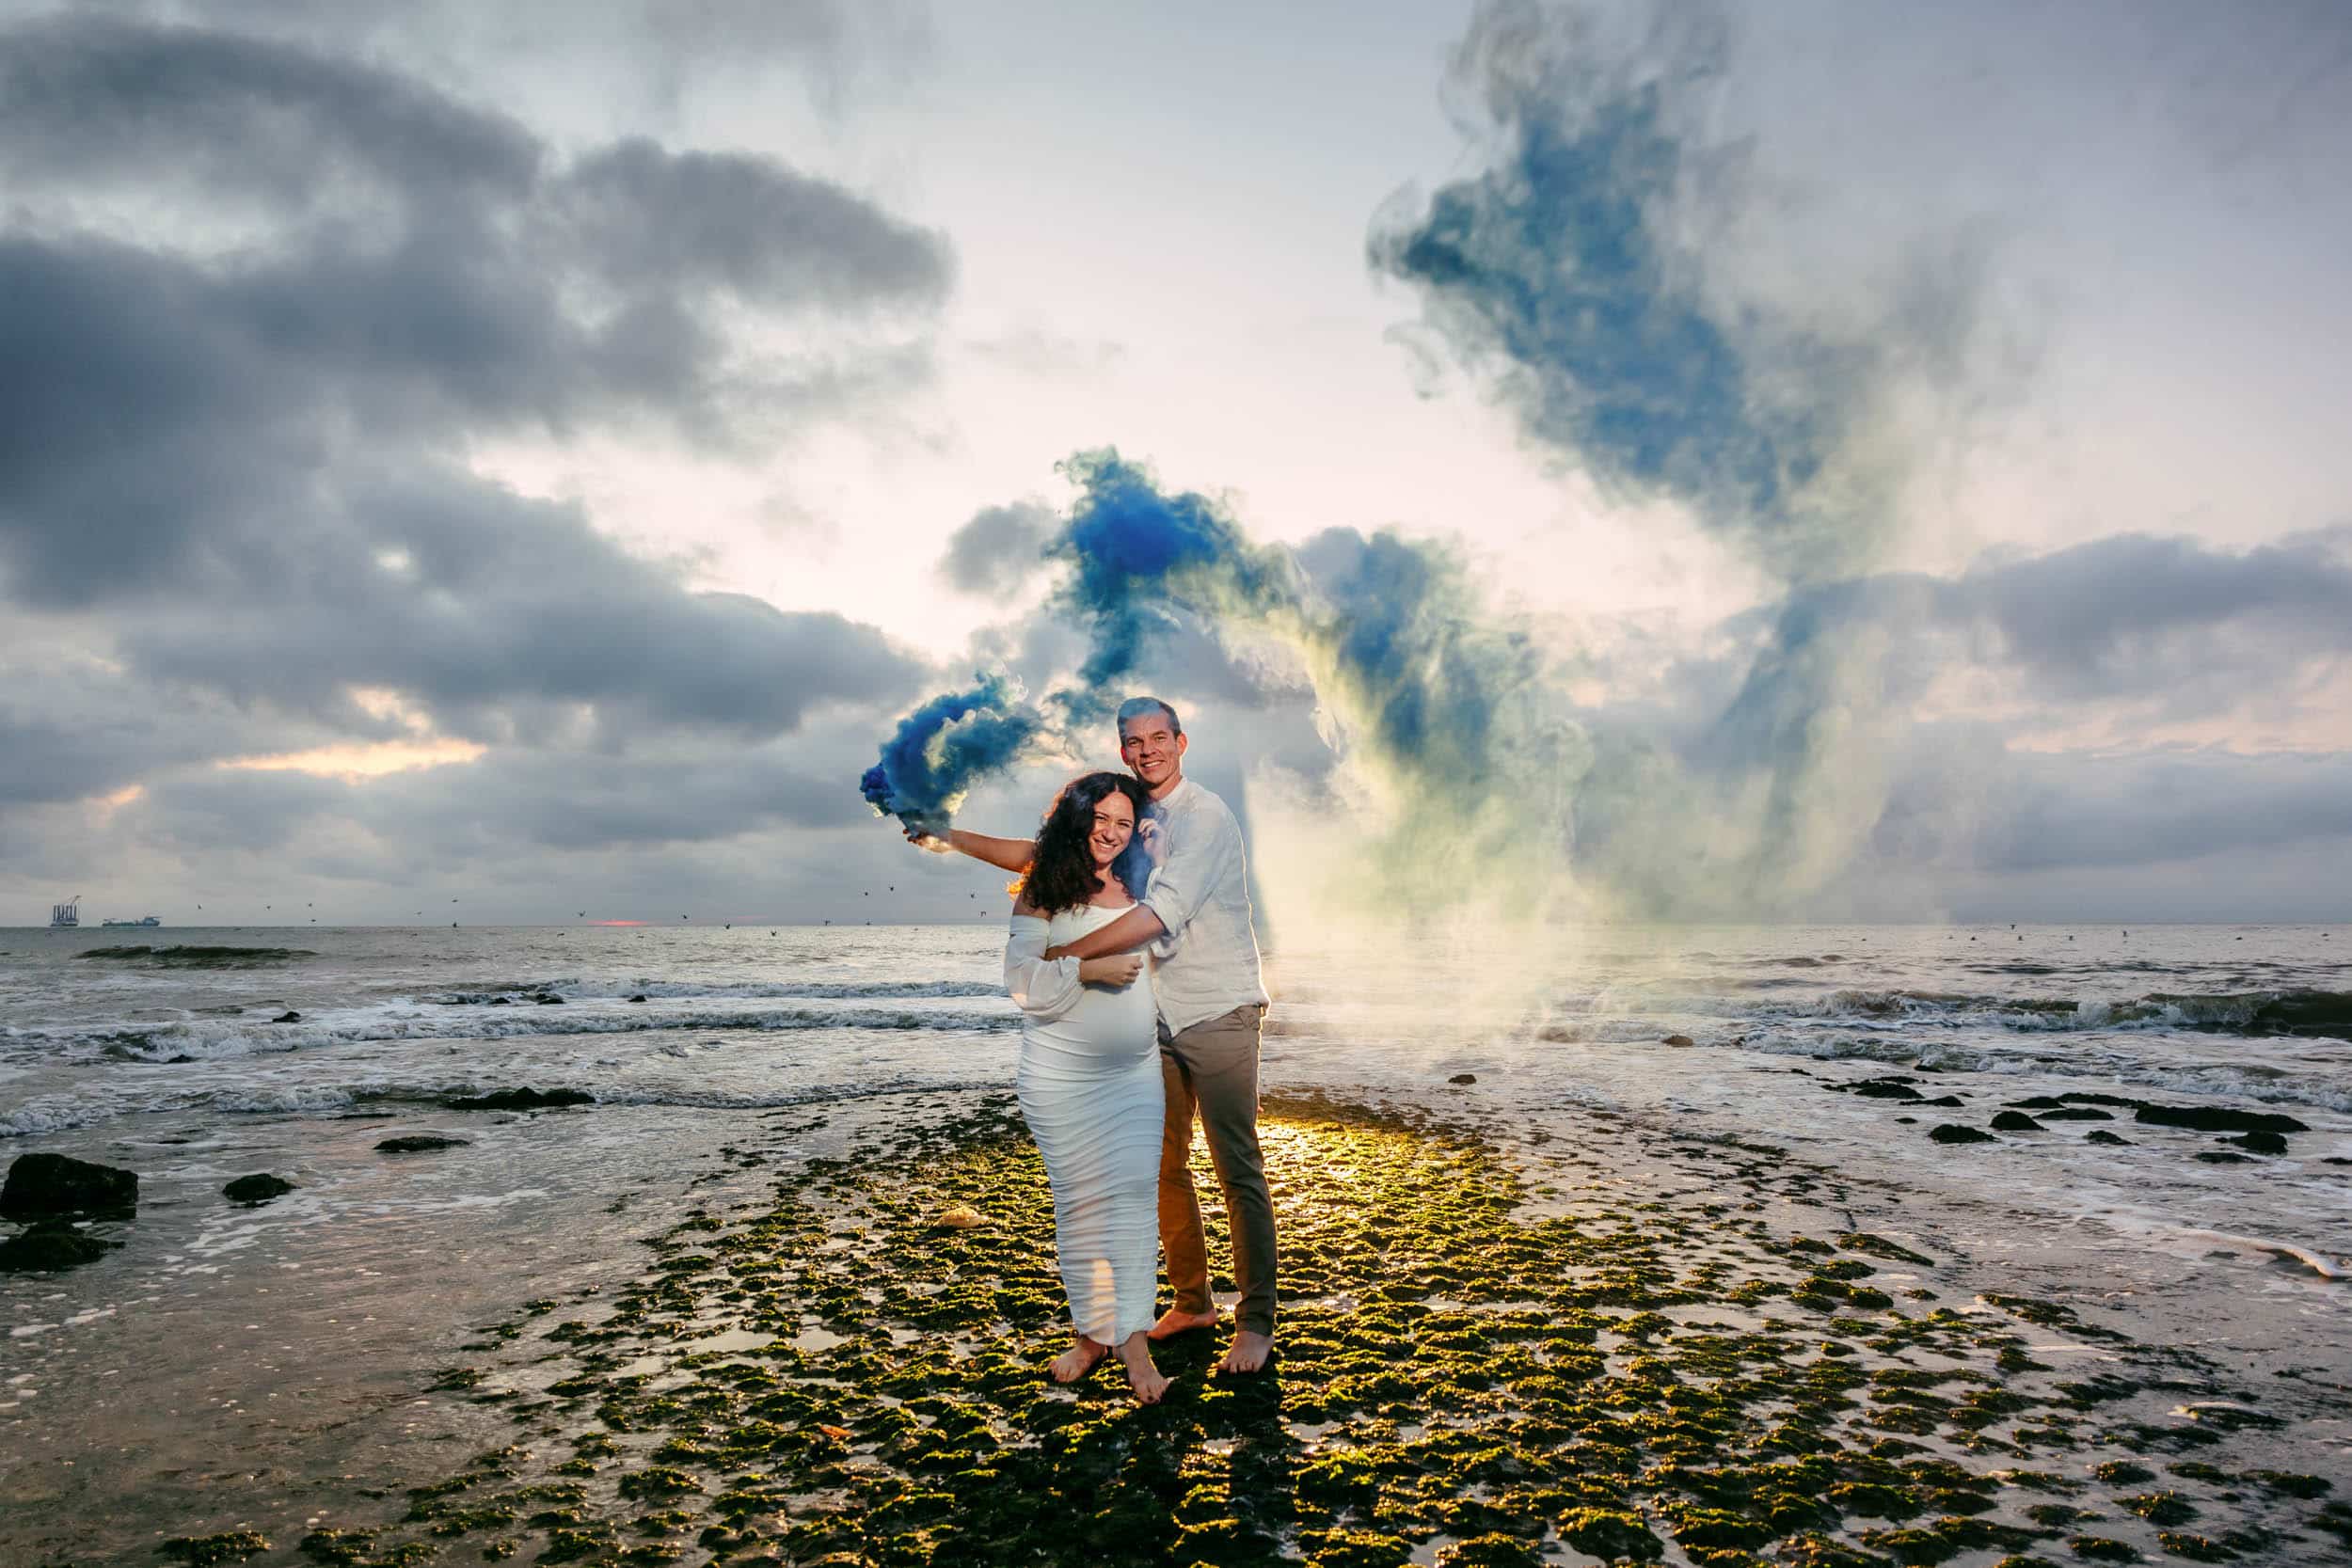 Een stel viert hun zwangerschap met een Zwangerschapsshoot op het strand, vrolijk in hun handen met blauwe rookbommen.